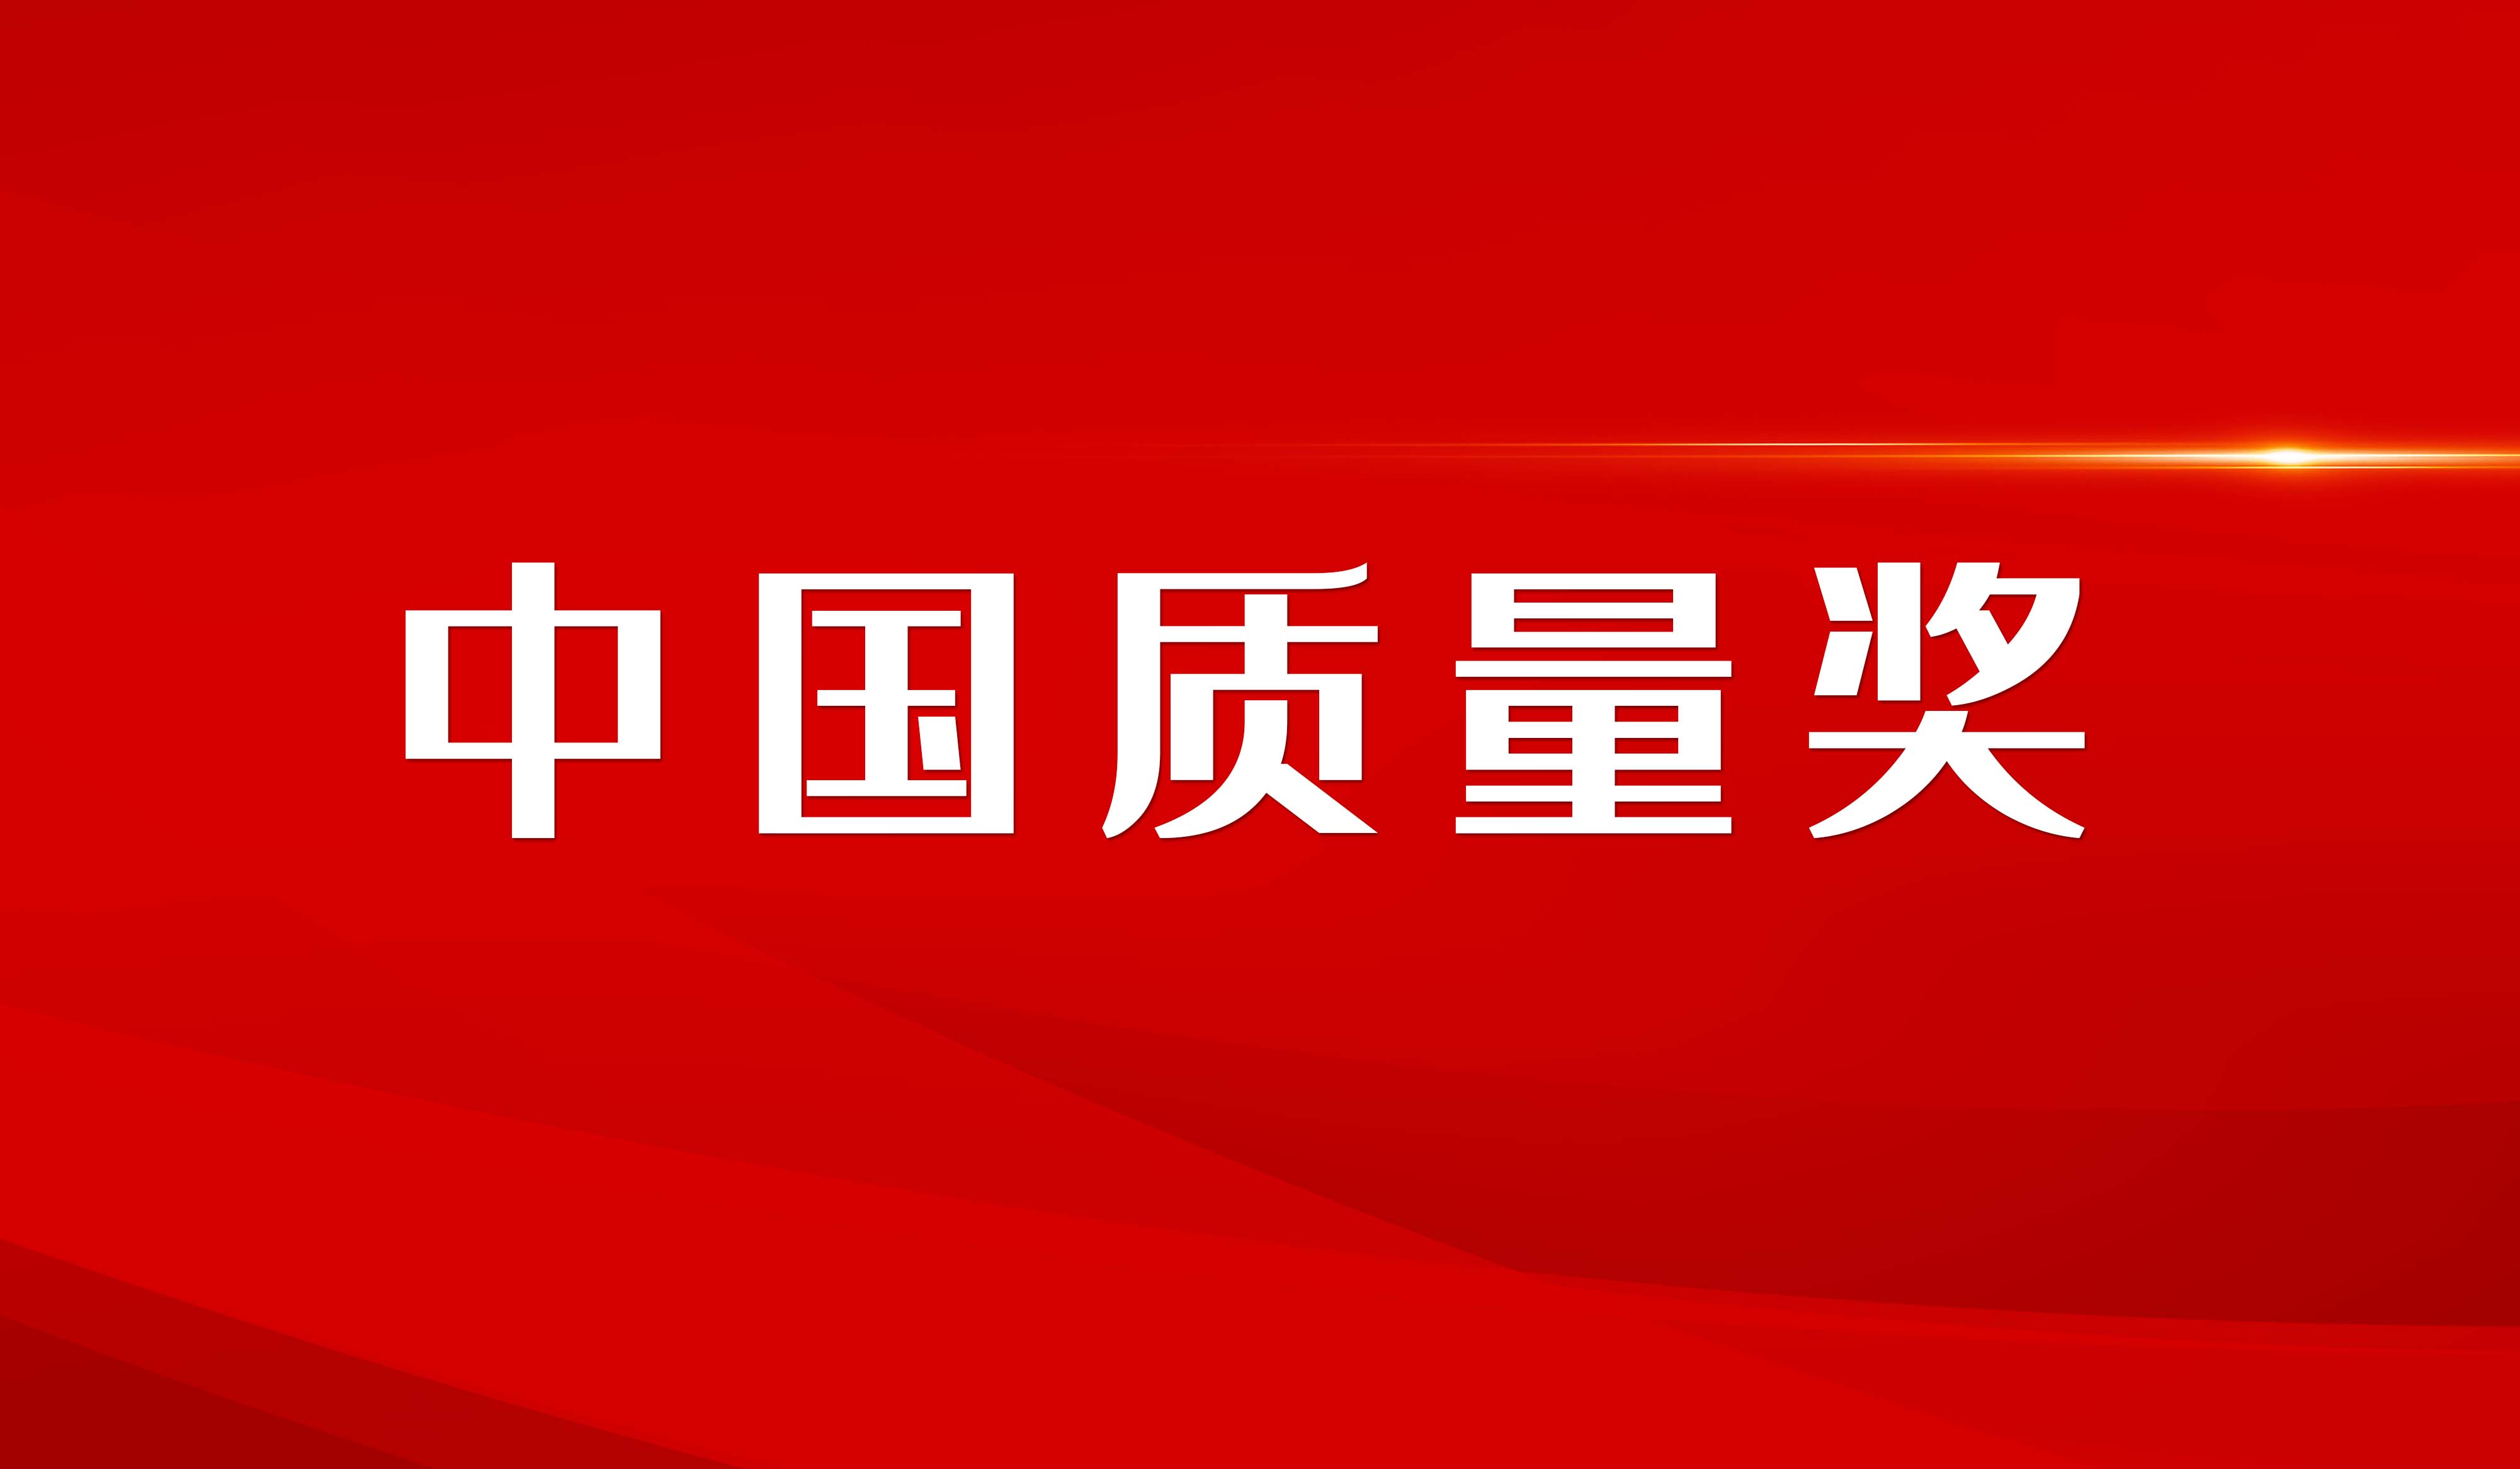 树立质量标杆 建设质量强国 第四届中国质量奖评选结果正式揭晓